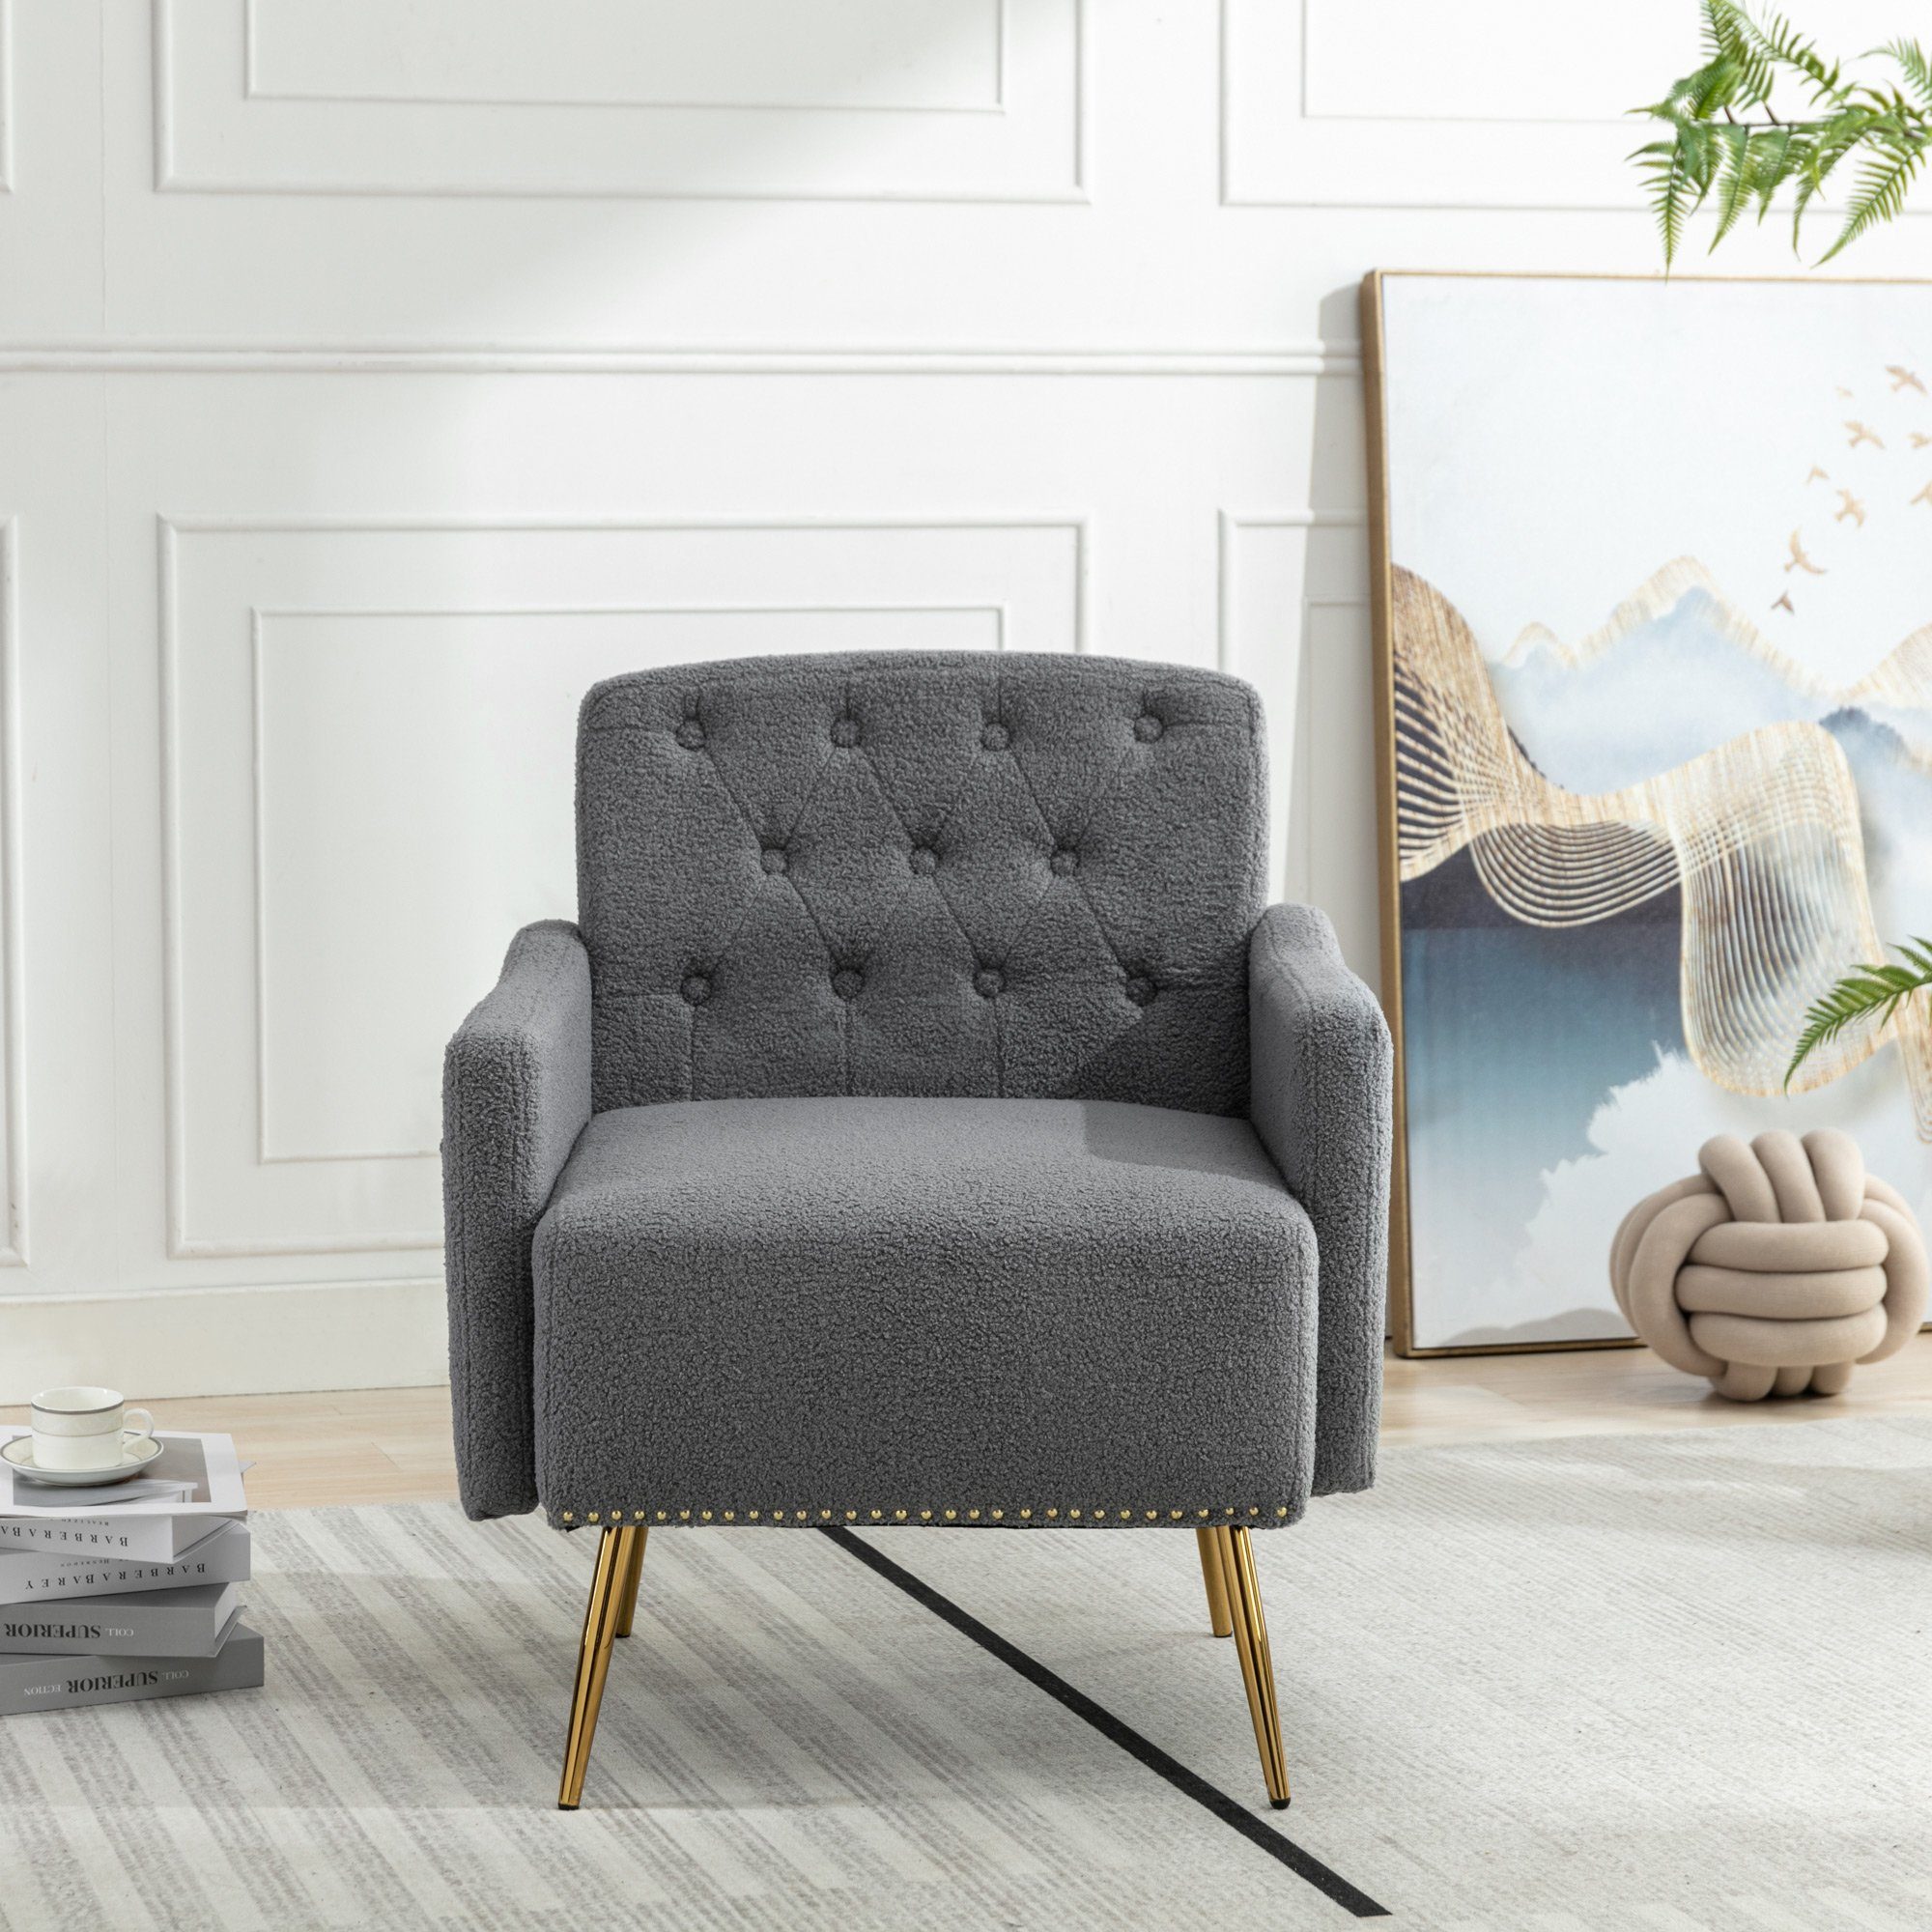 OKWISH Sessel Relaxsessel, Relaxstuhl, goldene Sessel), Metallbeine, oder bequemer grau Lesen geeignet Wohnzimmerstuhl, bequemer Reißverschluss-Design Sessel, (Wohnzimmerstuhl, zum Entspannen, mit Teddy-Samt-Stuhl